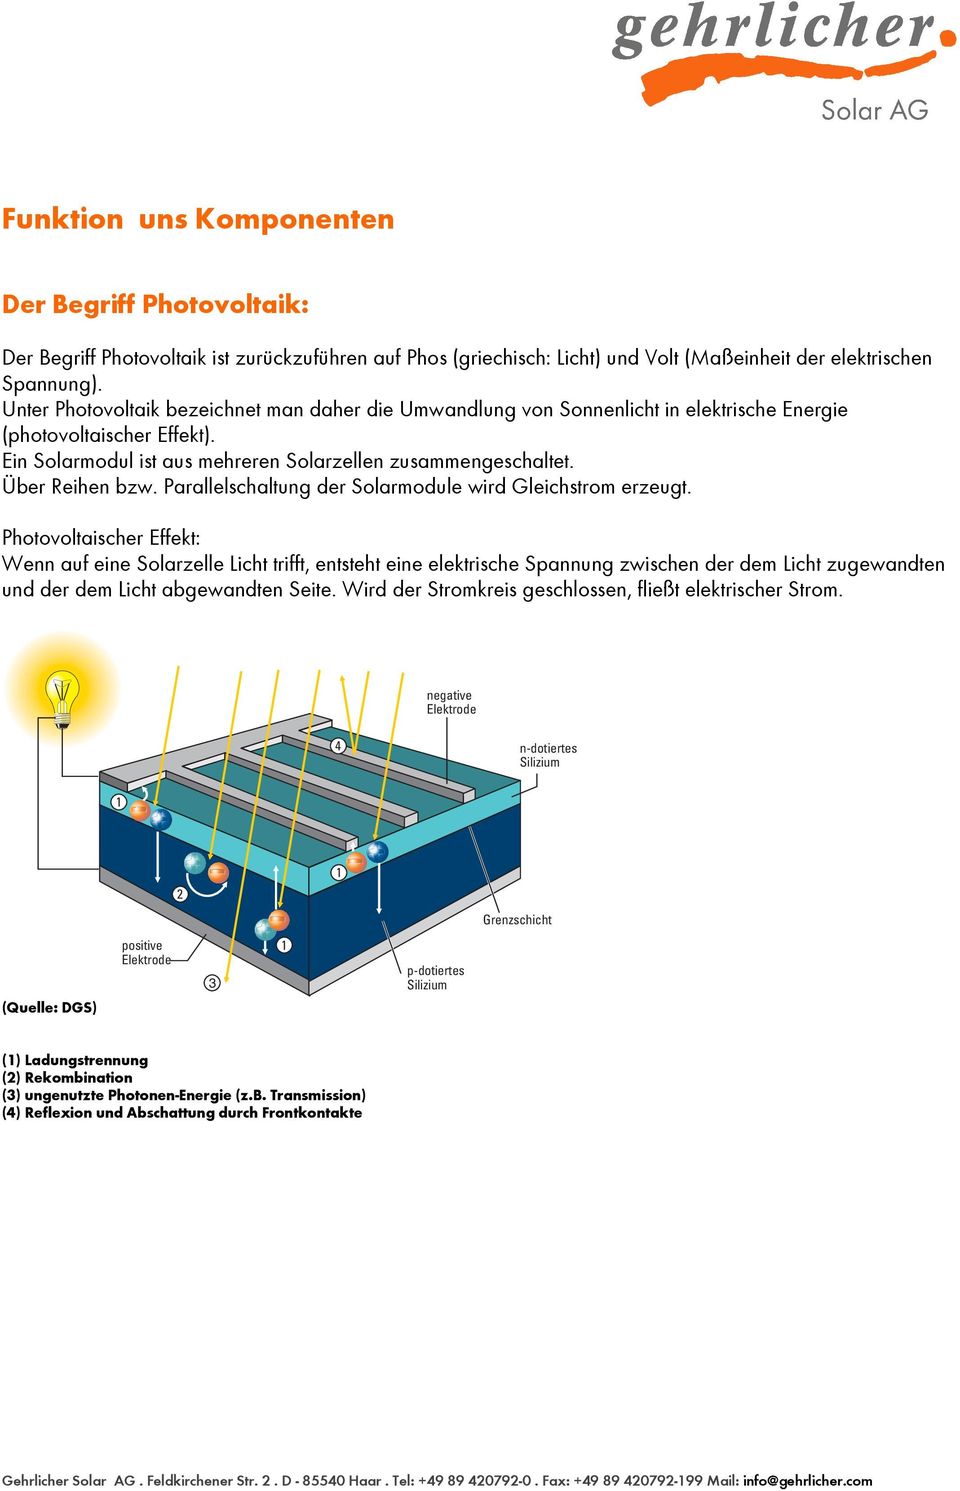 Über Reihen bzw. Parallelschaltung der Solarmodule wird Gleichstrom erzeugt.